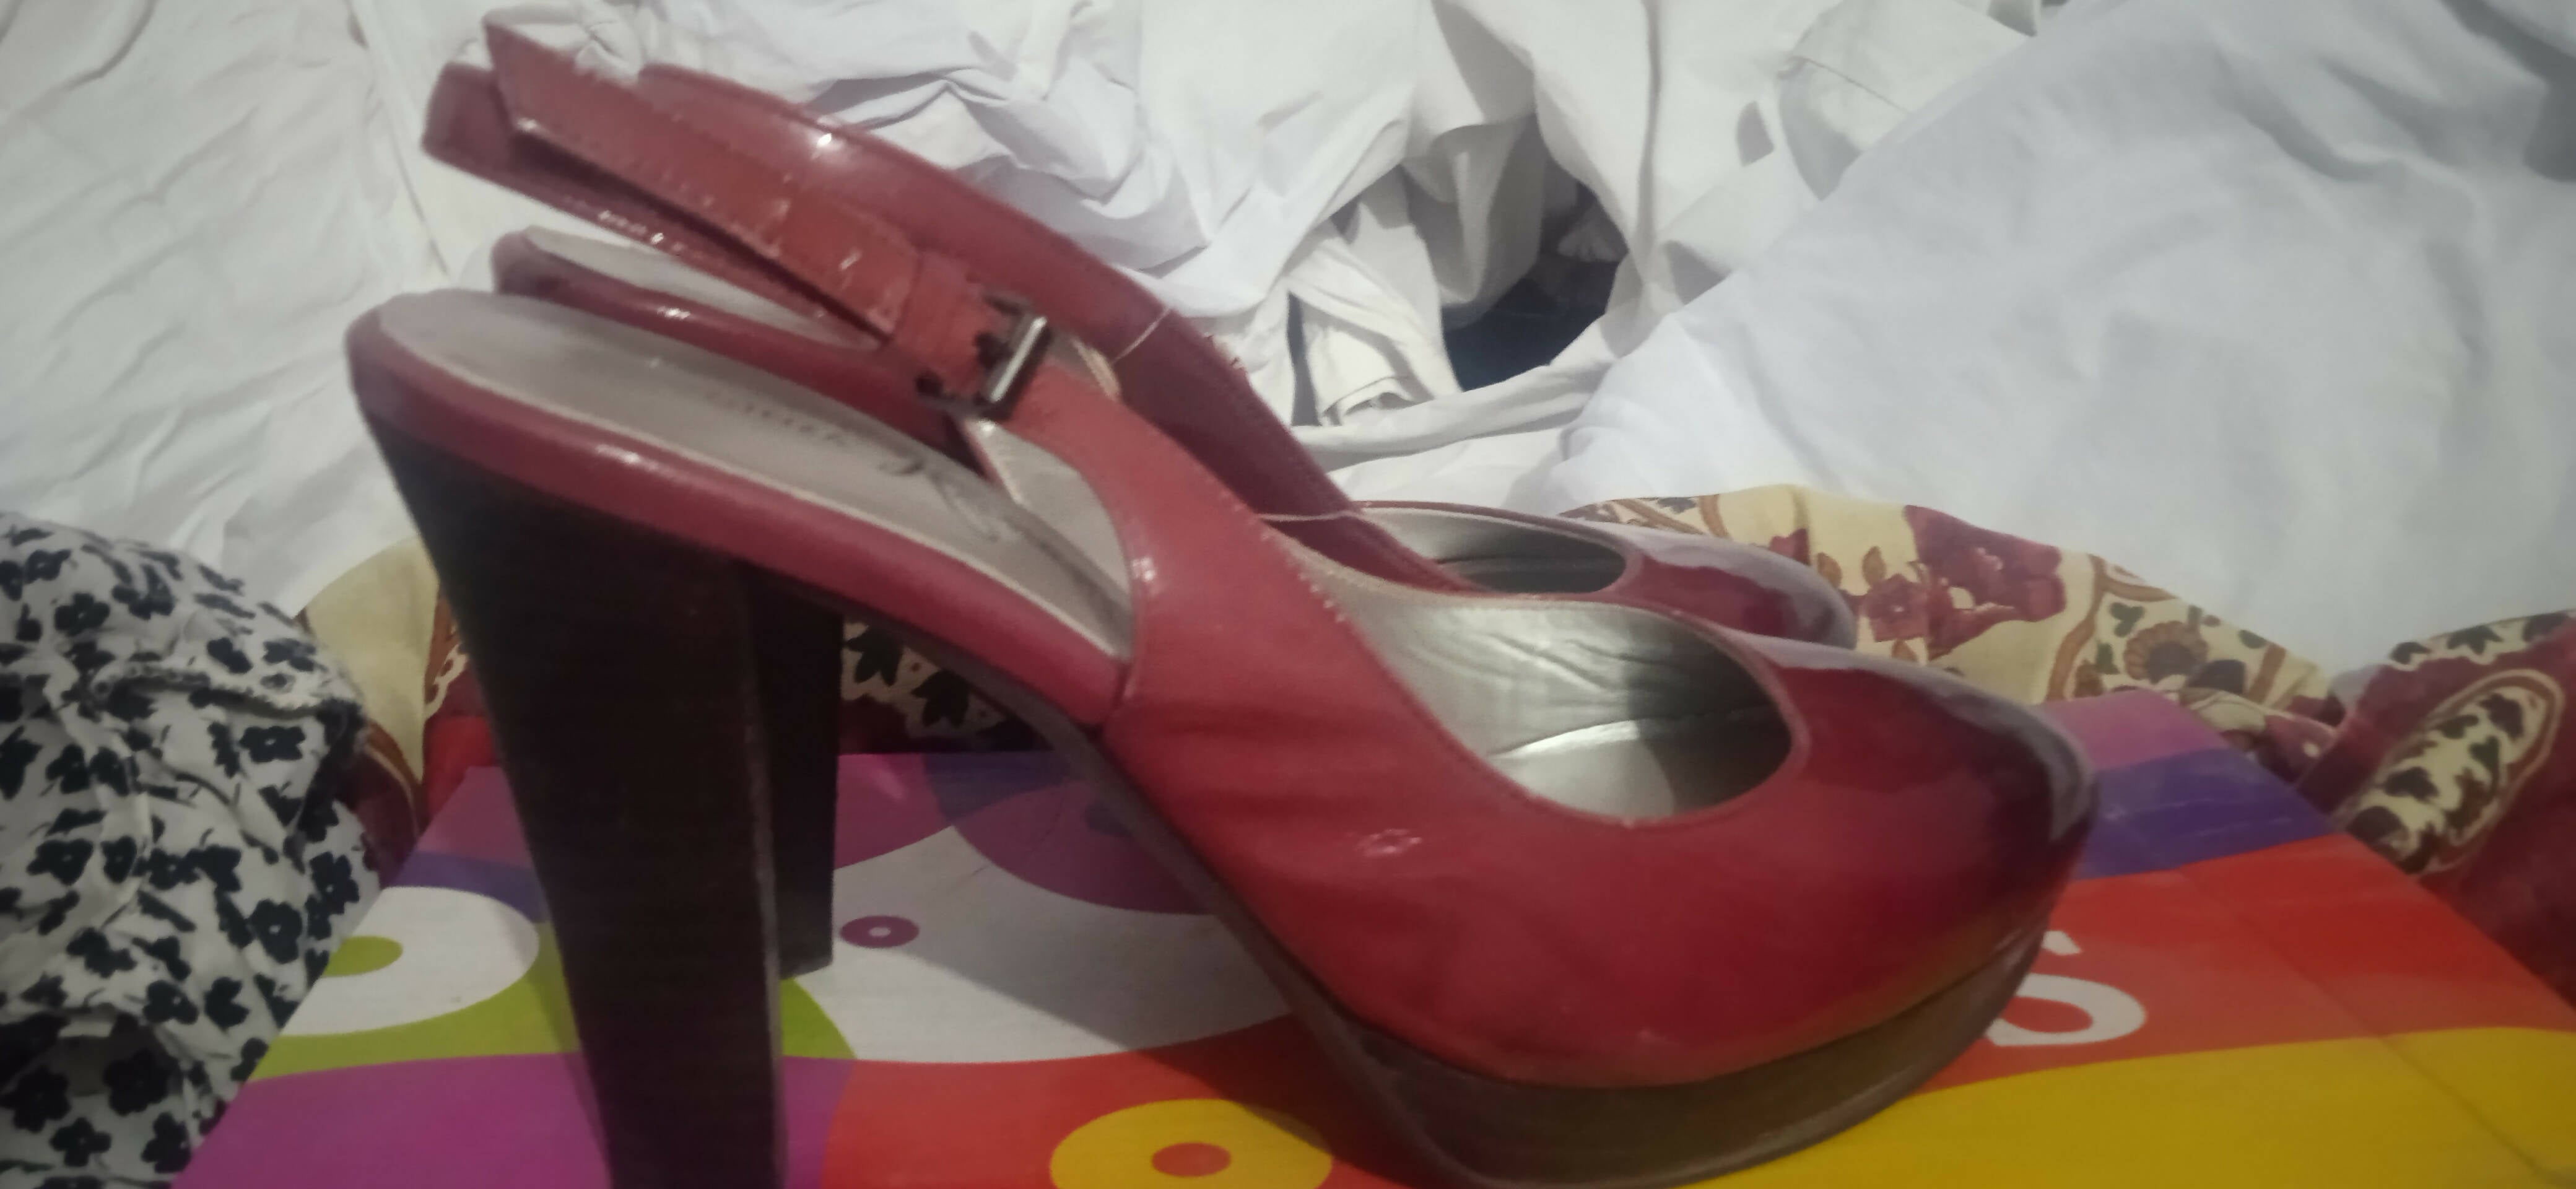 Ginza Kanematsu| Women Shoes | Size : 36 | Worn Once